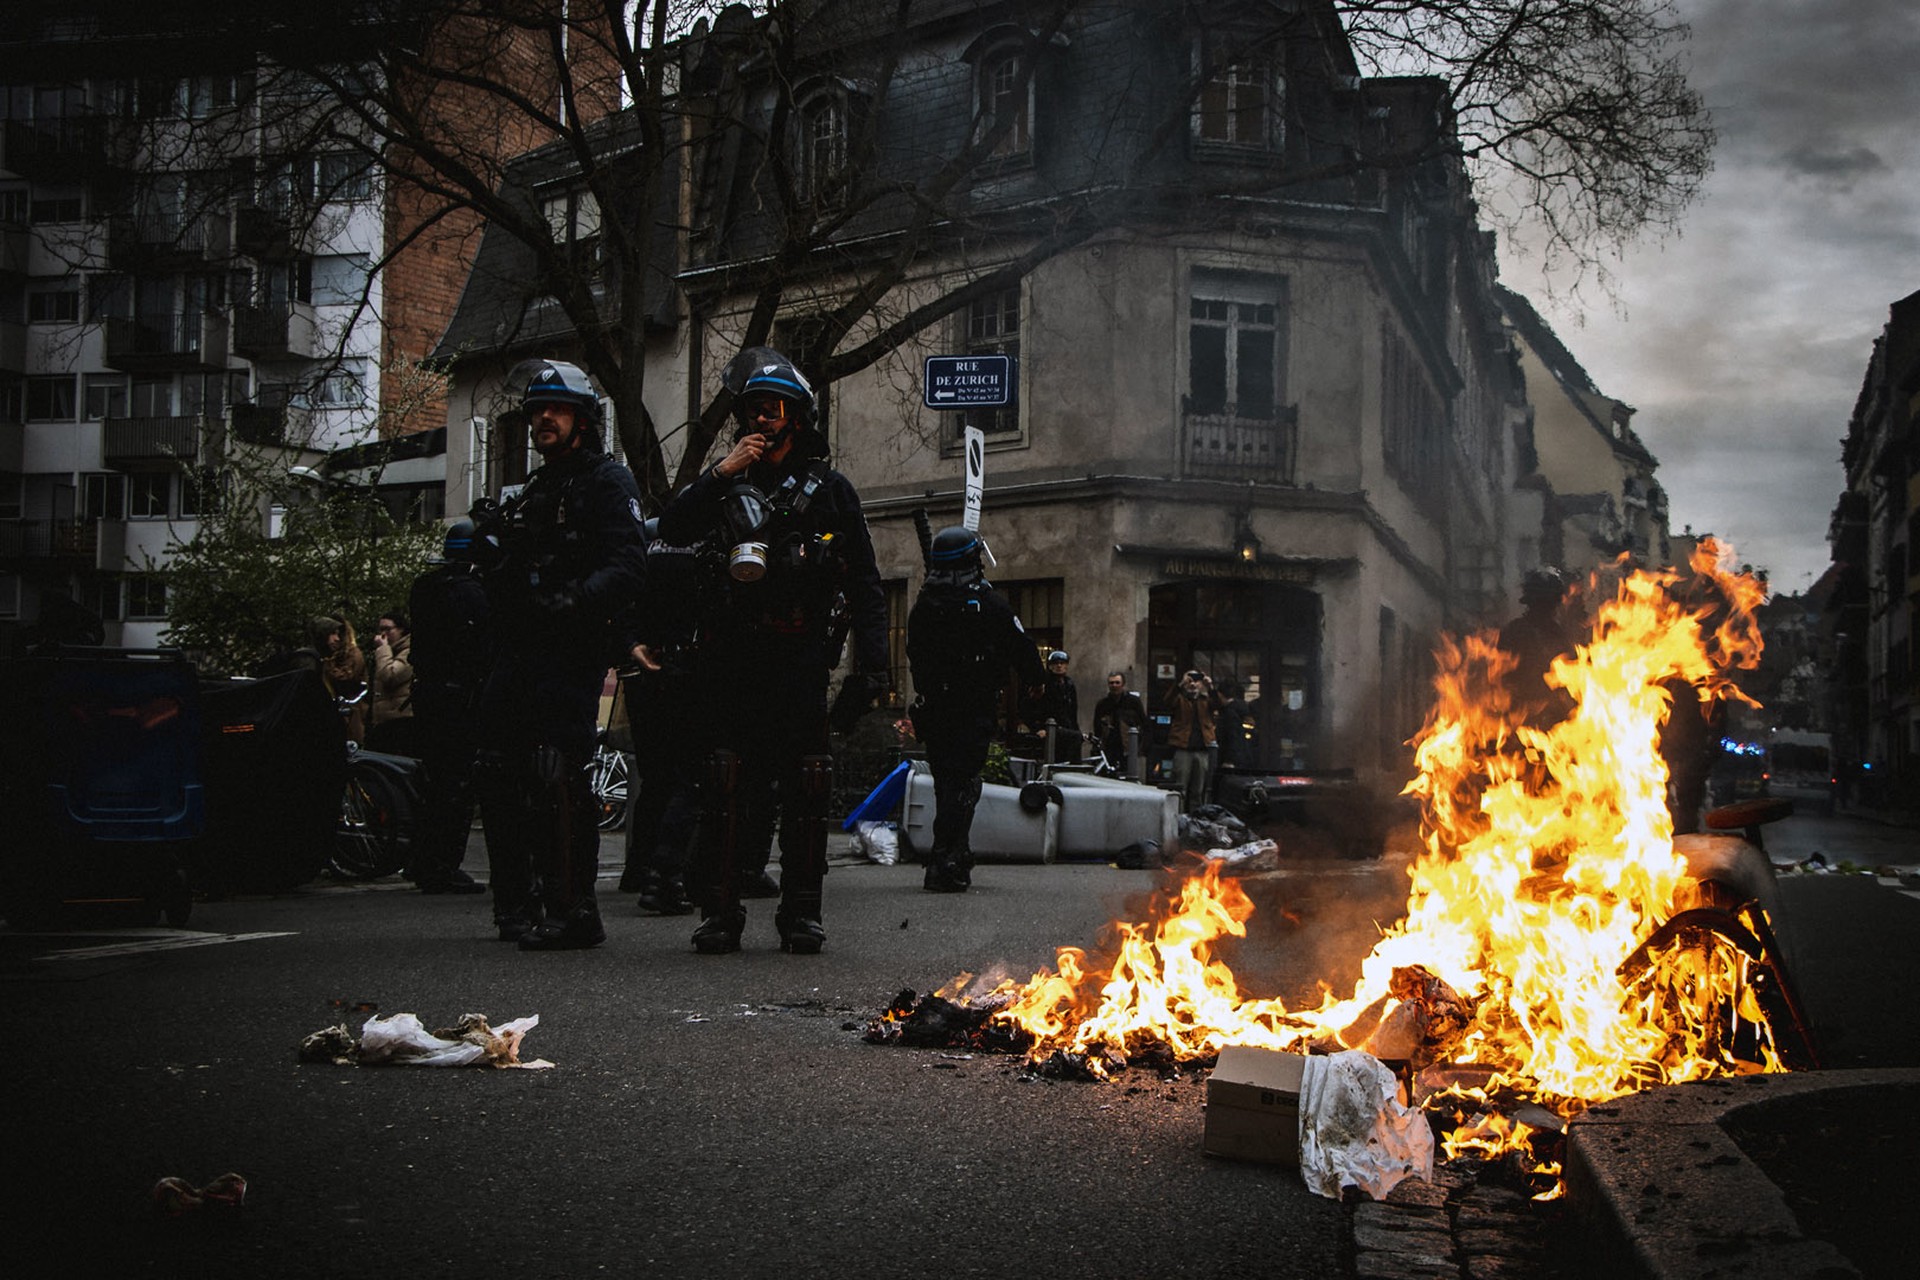 Actu Lyon: Протестующие в Лионе громят магазины и жгут баки после I тура выборов